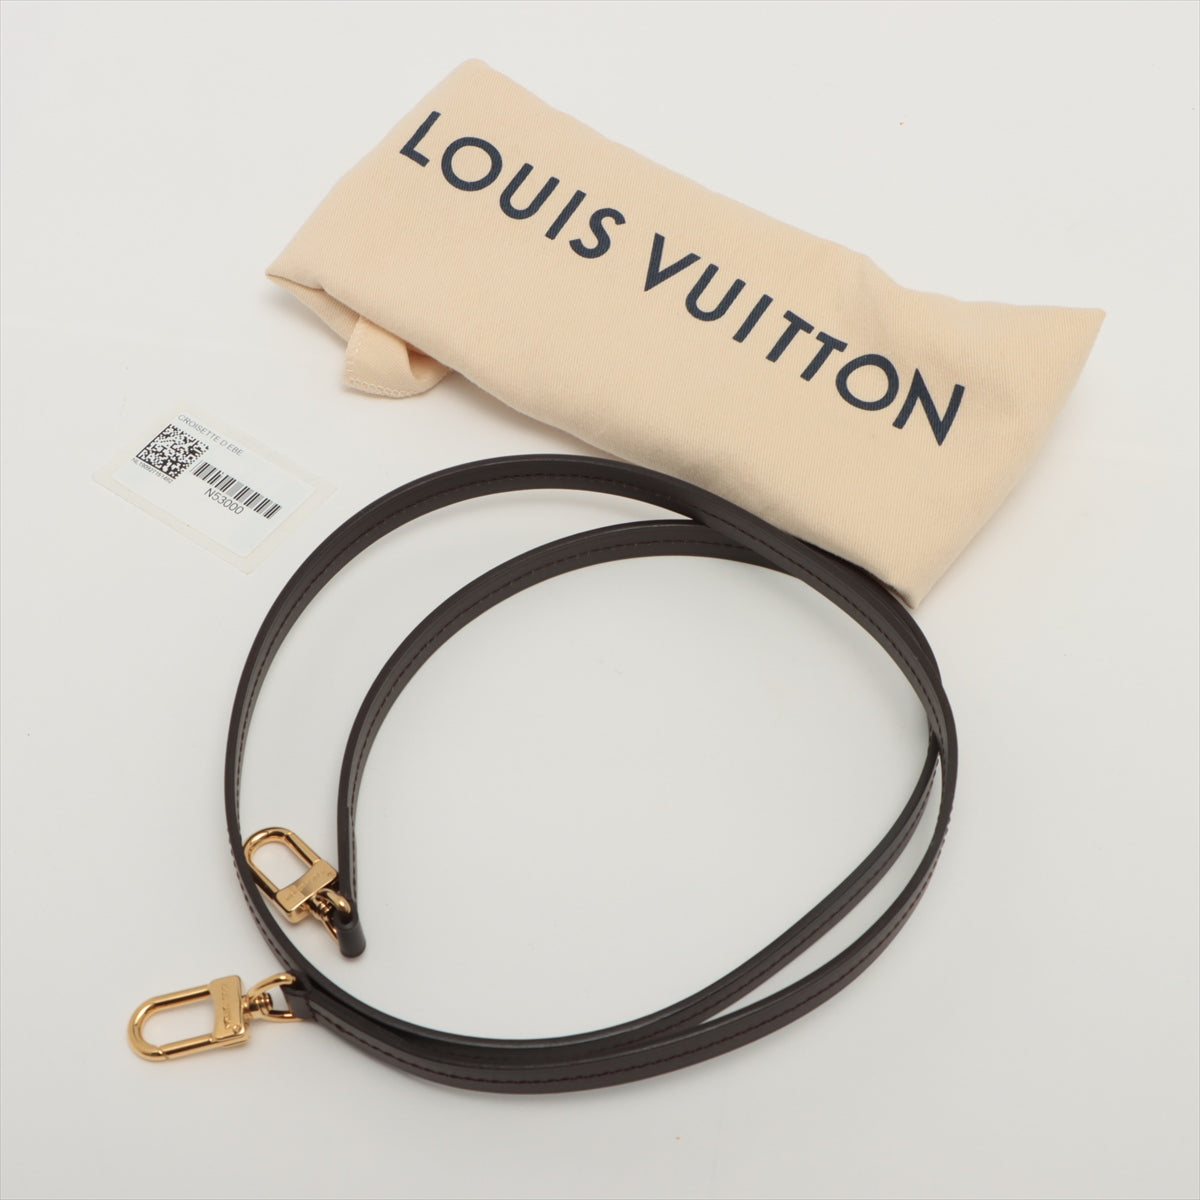 Louis Vuitton Croisette Damier Ebène - IconPrincess